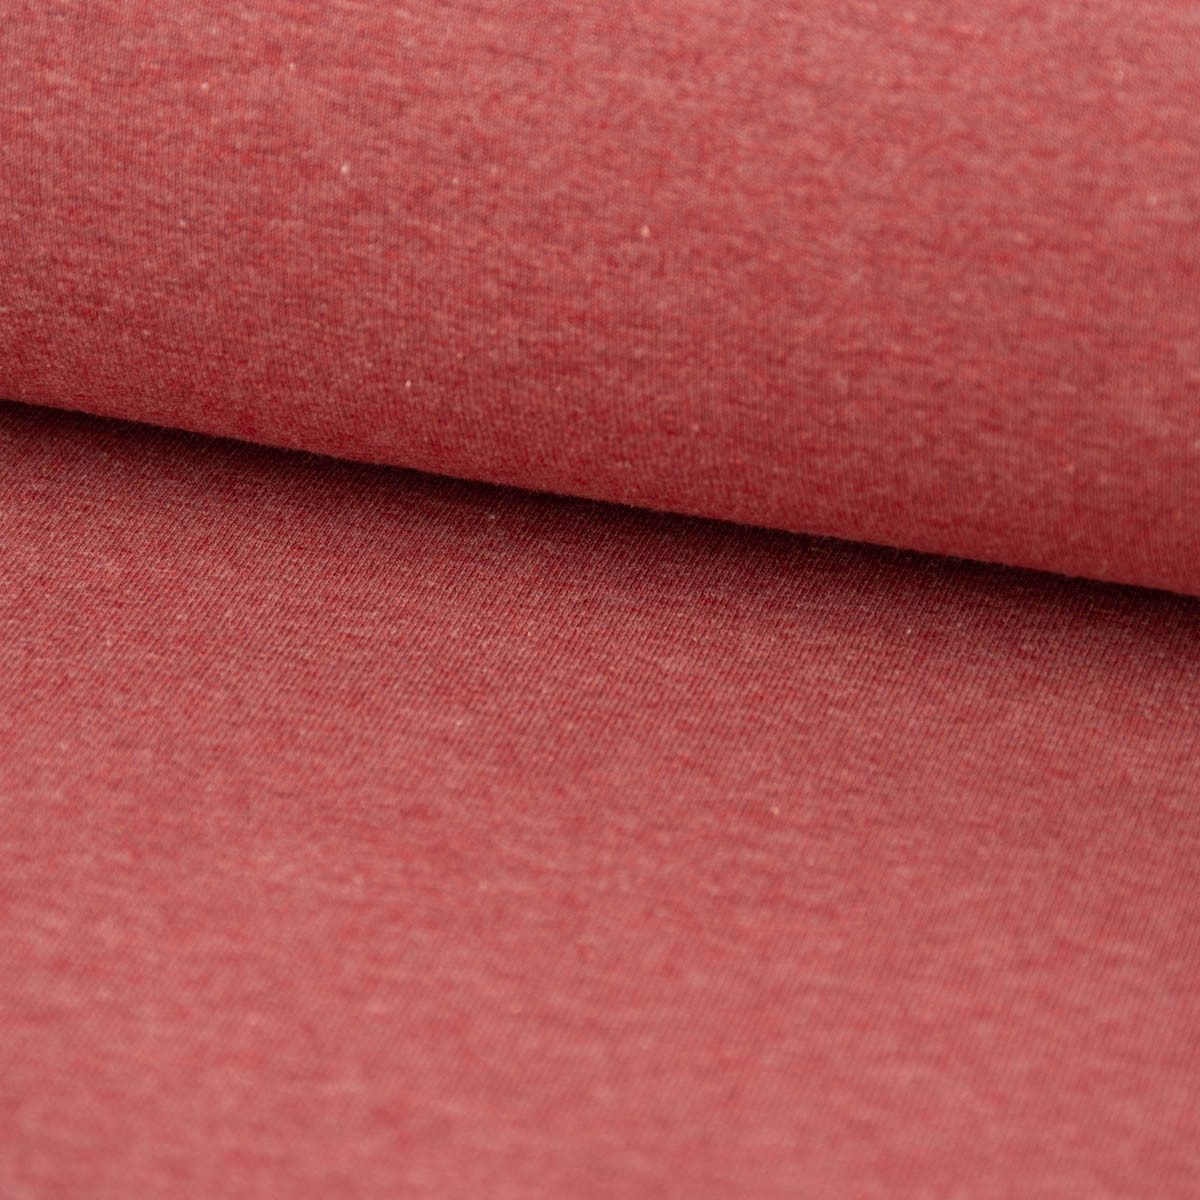 SCHÖNER LEBEN. Stoff Baumwolljersey Melange Jersey einfarbig rot meliert 1,45m Breite, allergikergeeignet